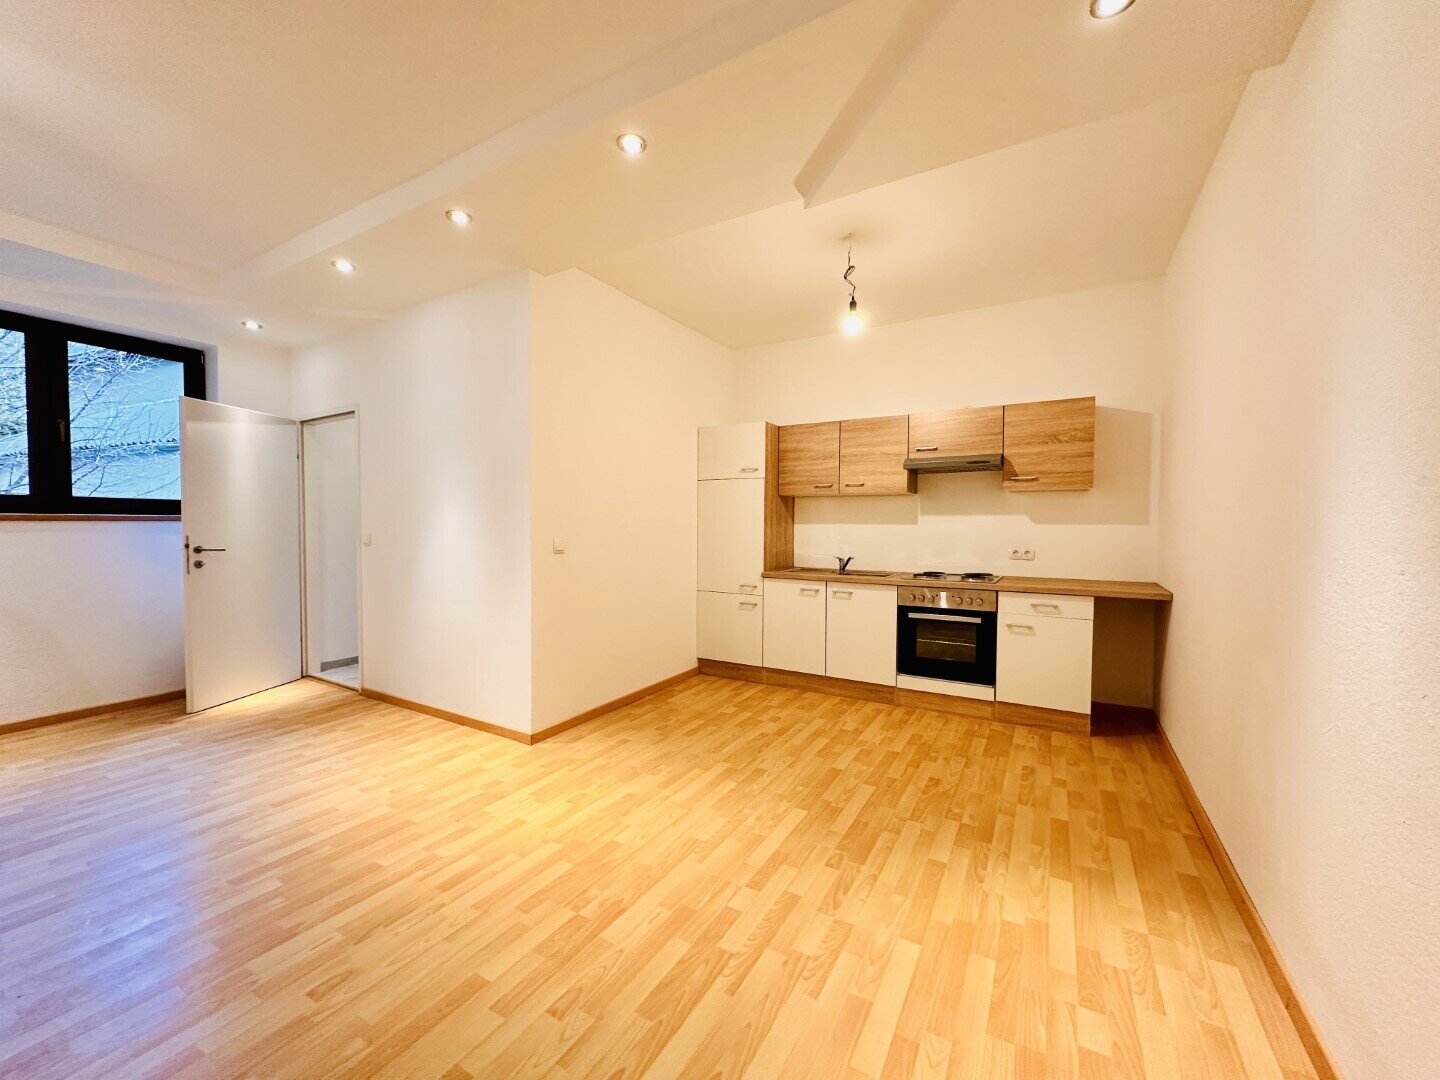 Für Haupt oder Zweitwohnsitz geeignet – neu sanierte Wohnung zum Kauf in Grünbach am Schneeberg!, 2733 Grünbach am Schneeberg, Wohnung